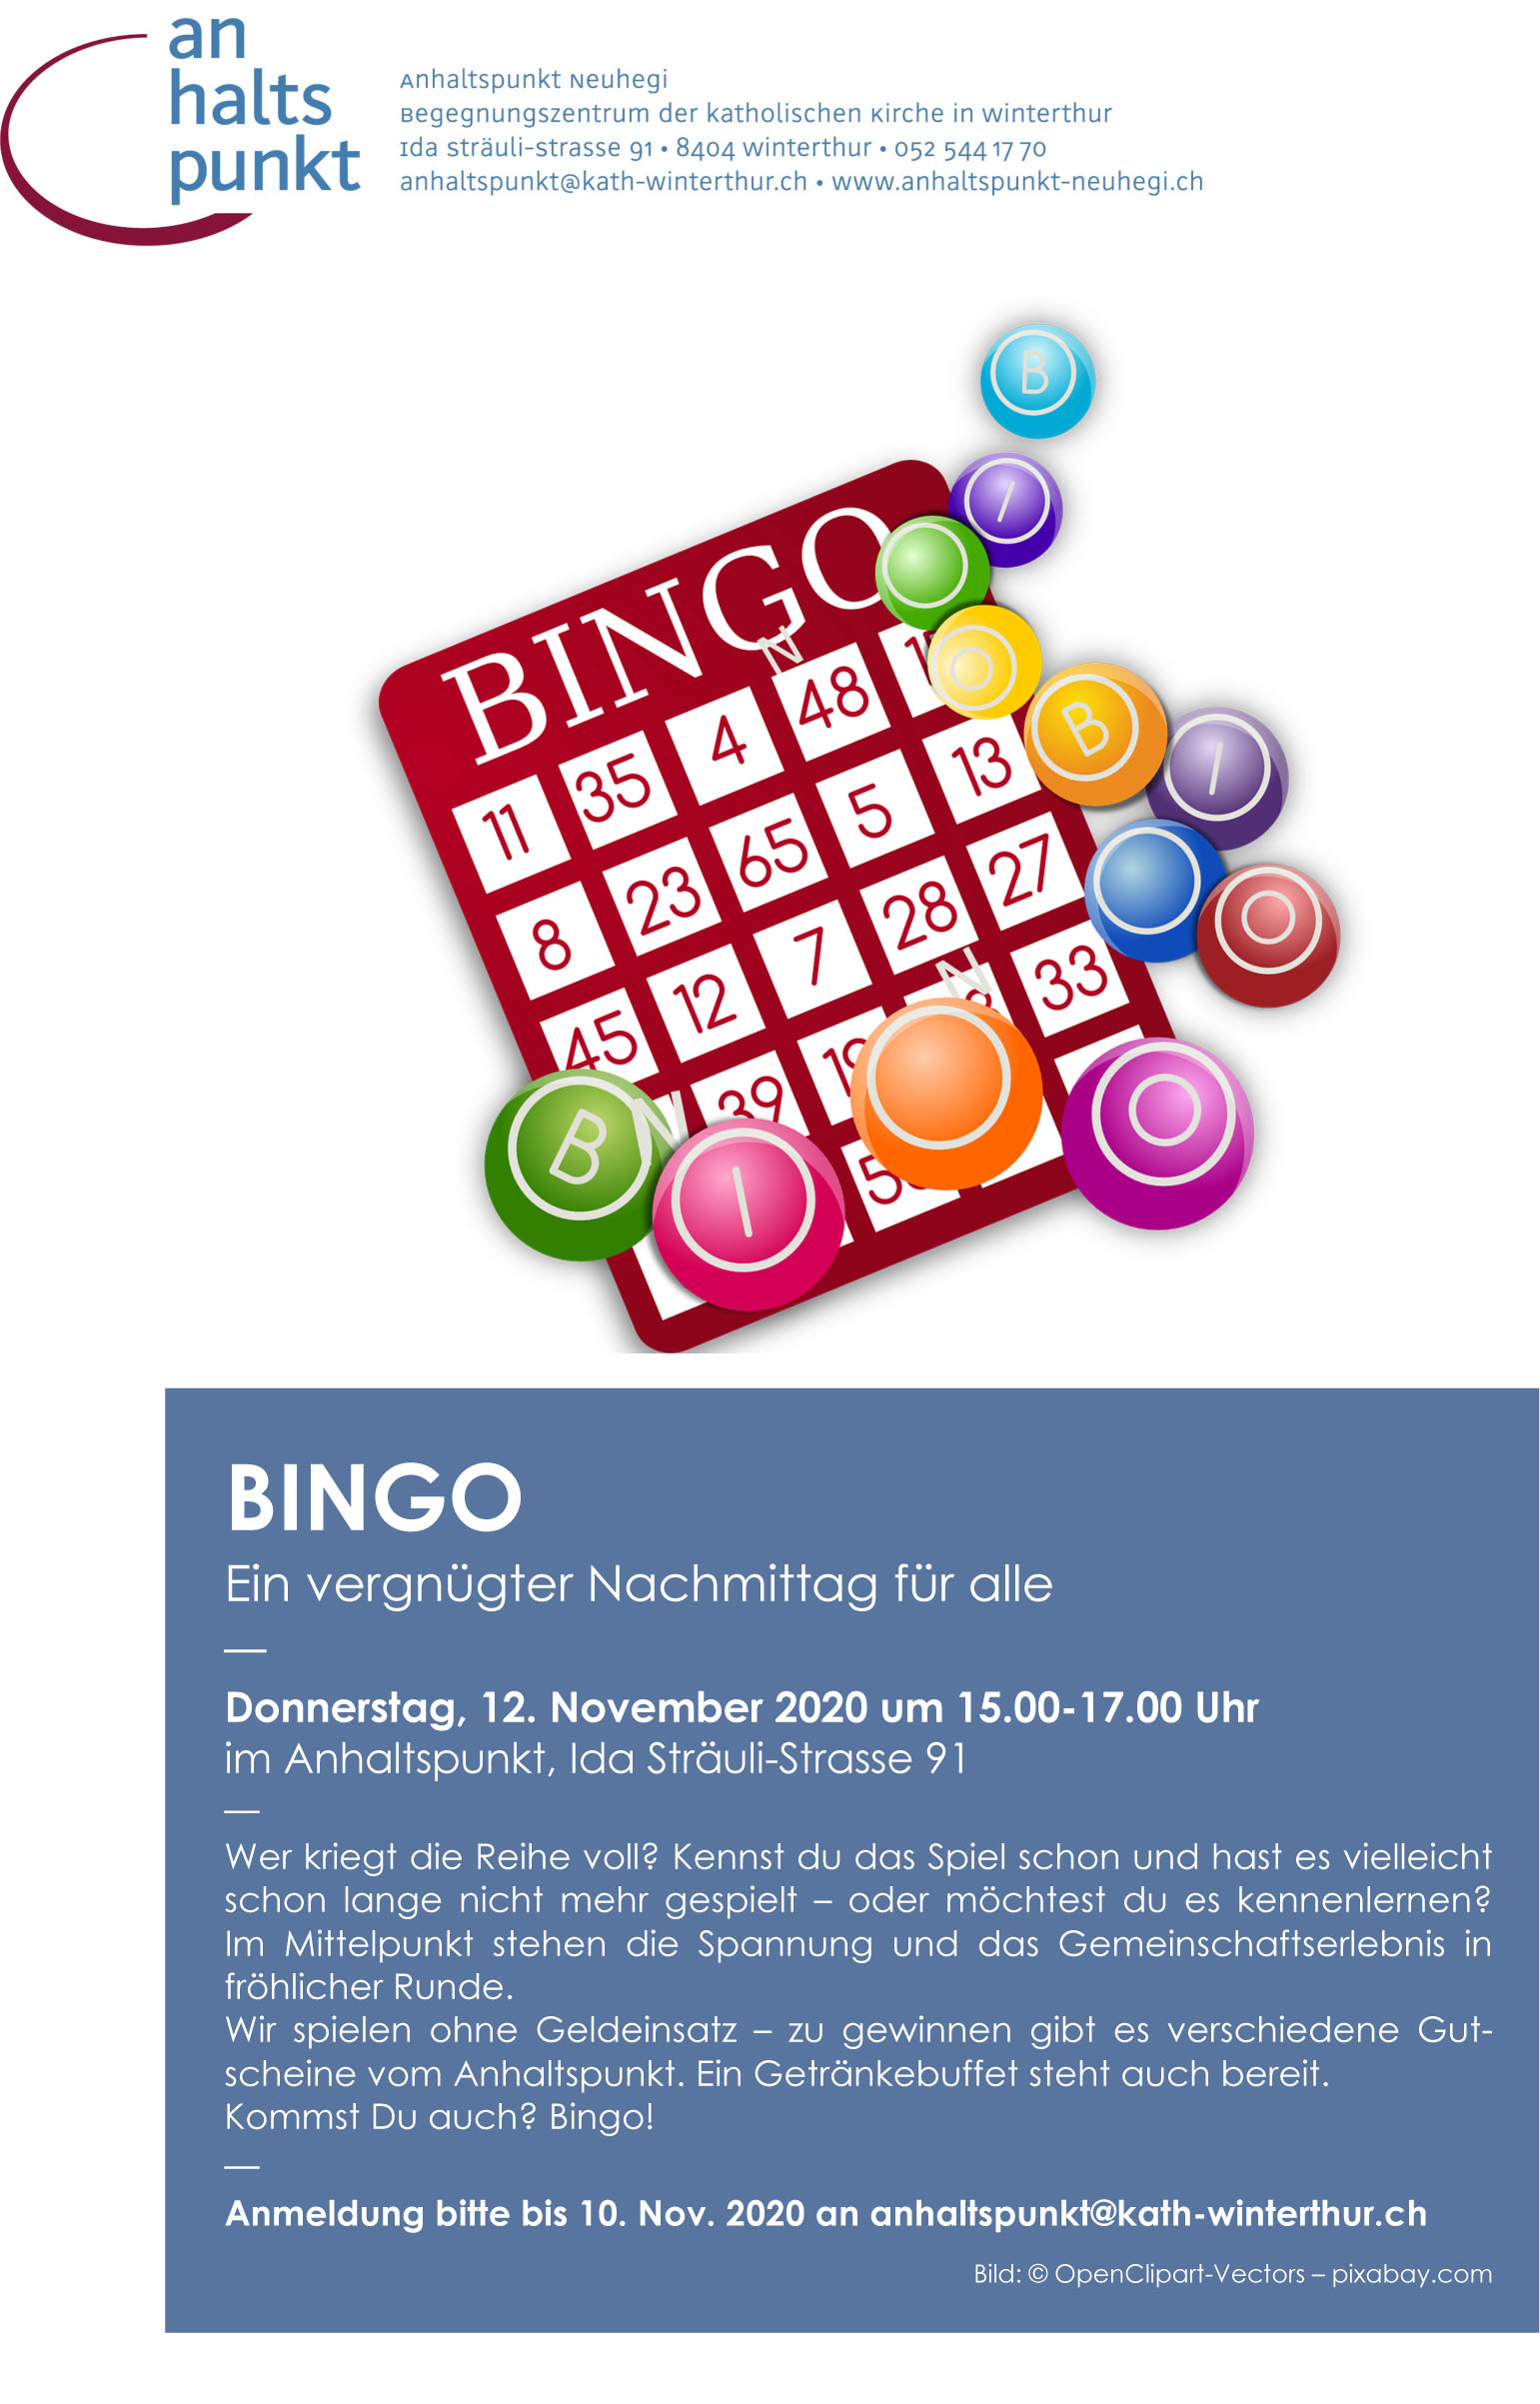 ahp Bingo 2020 11